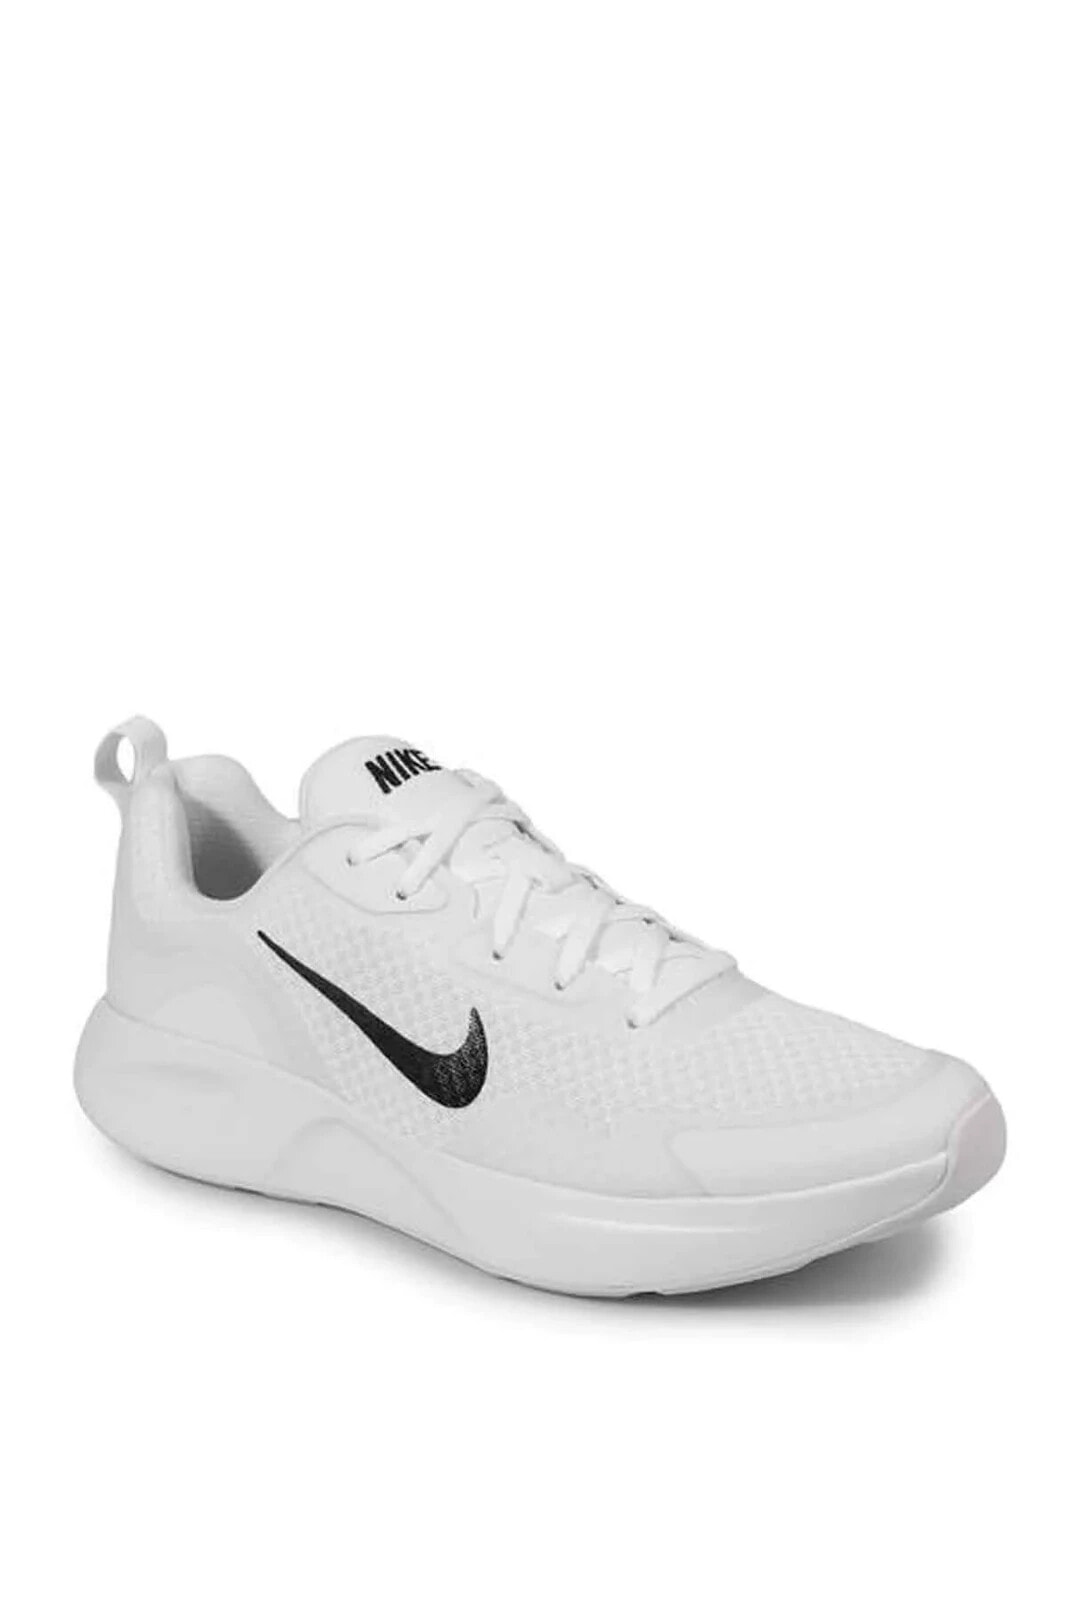 Wearallday Erkek Günlük Spor Ayakkabı Cj1682-101-beyaz